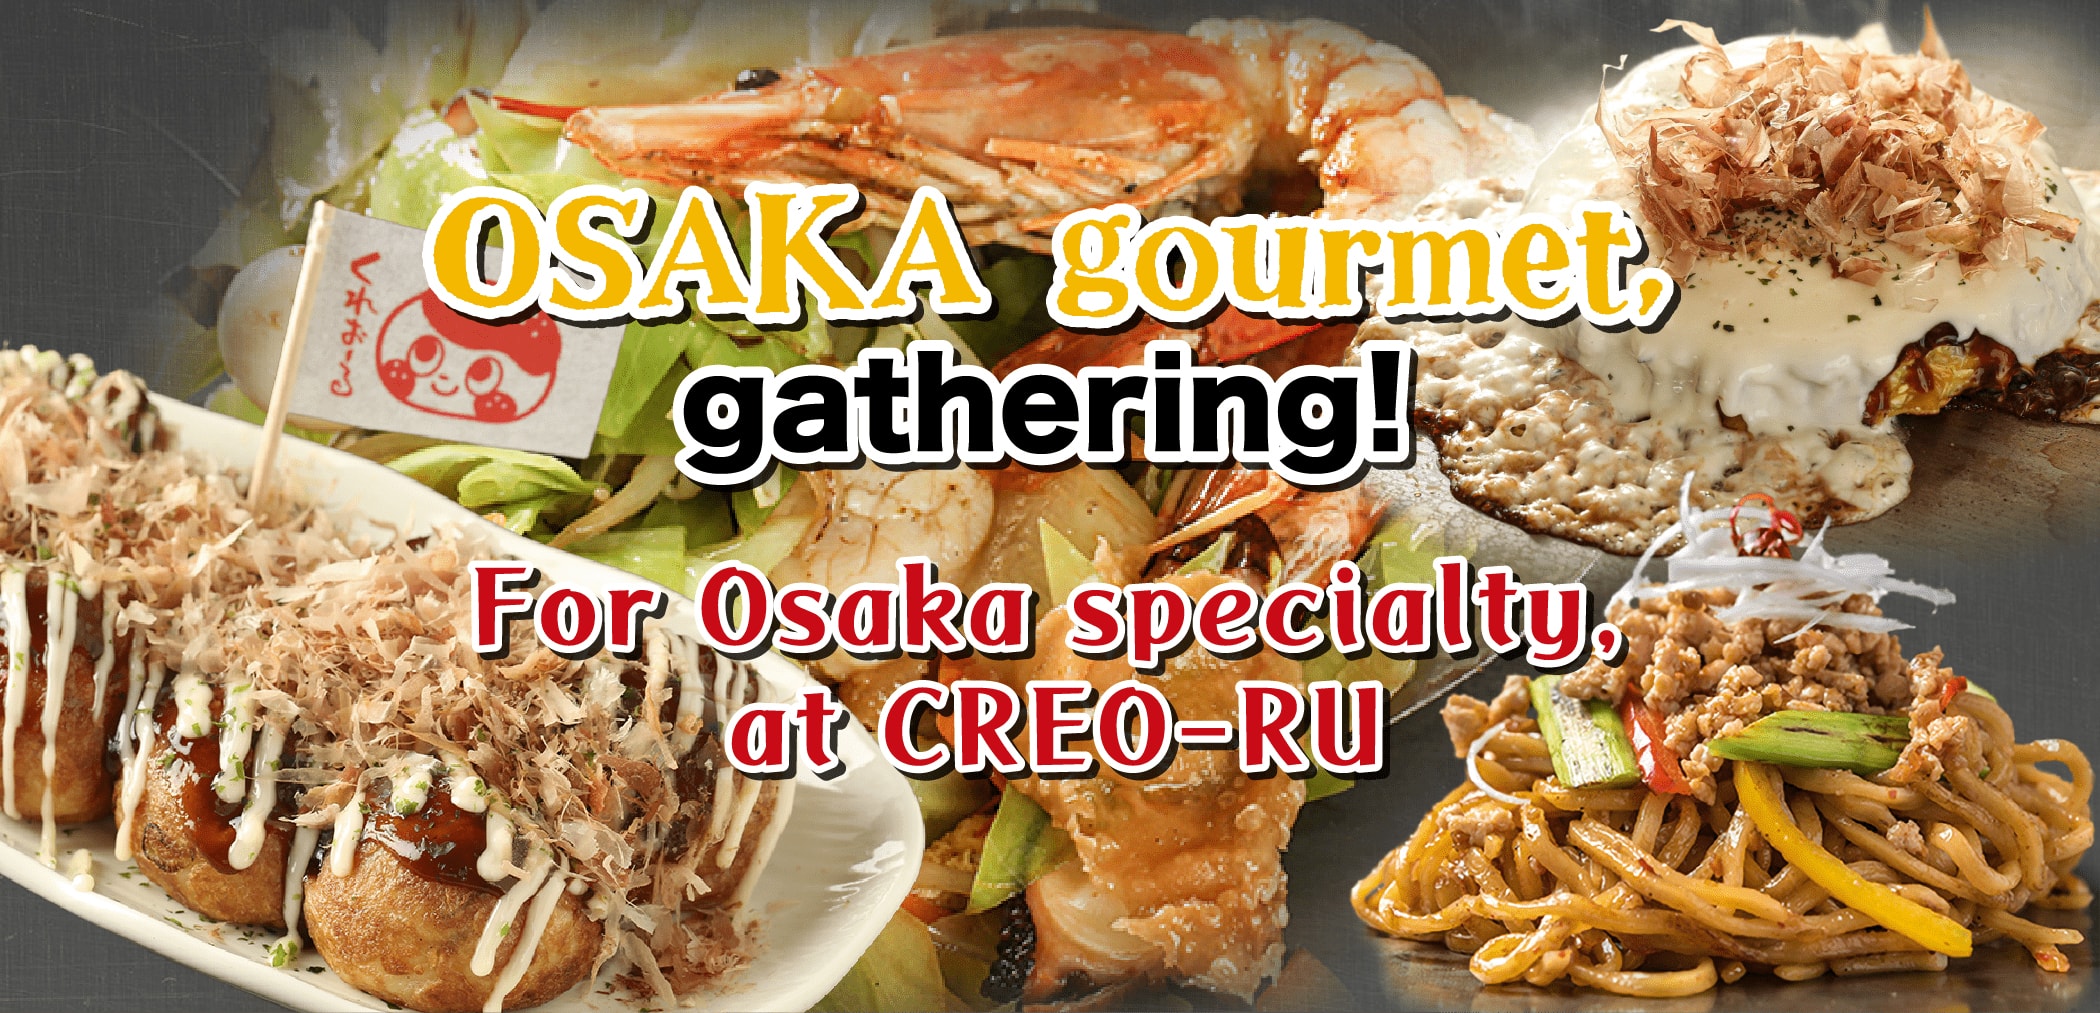 OSAKA gourment,gathering! For Osaka specialty,at CREO-RU